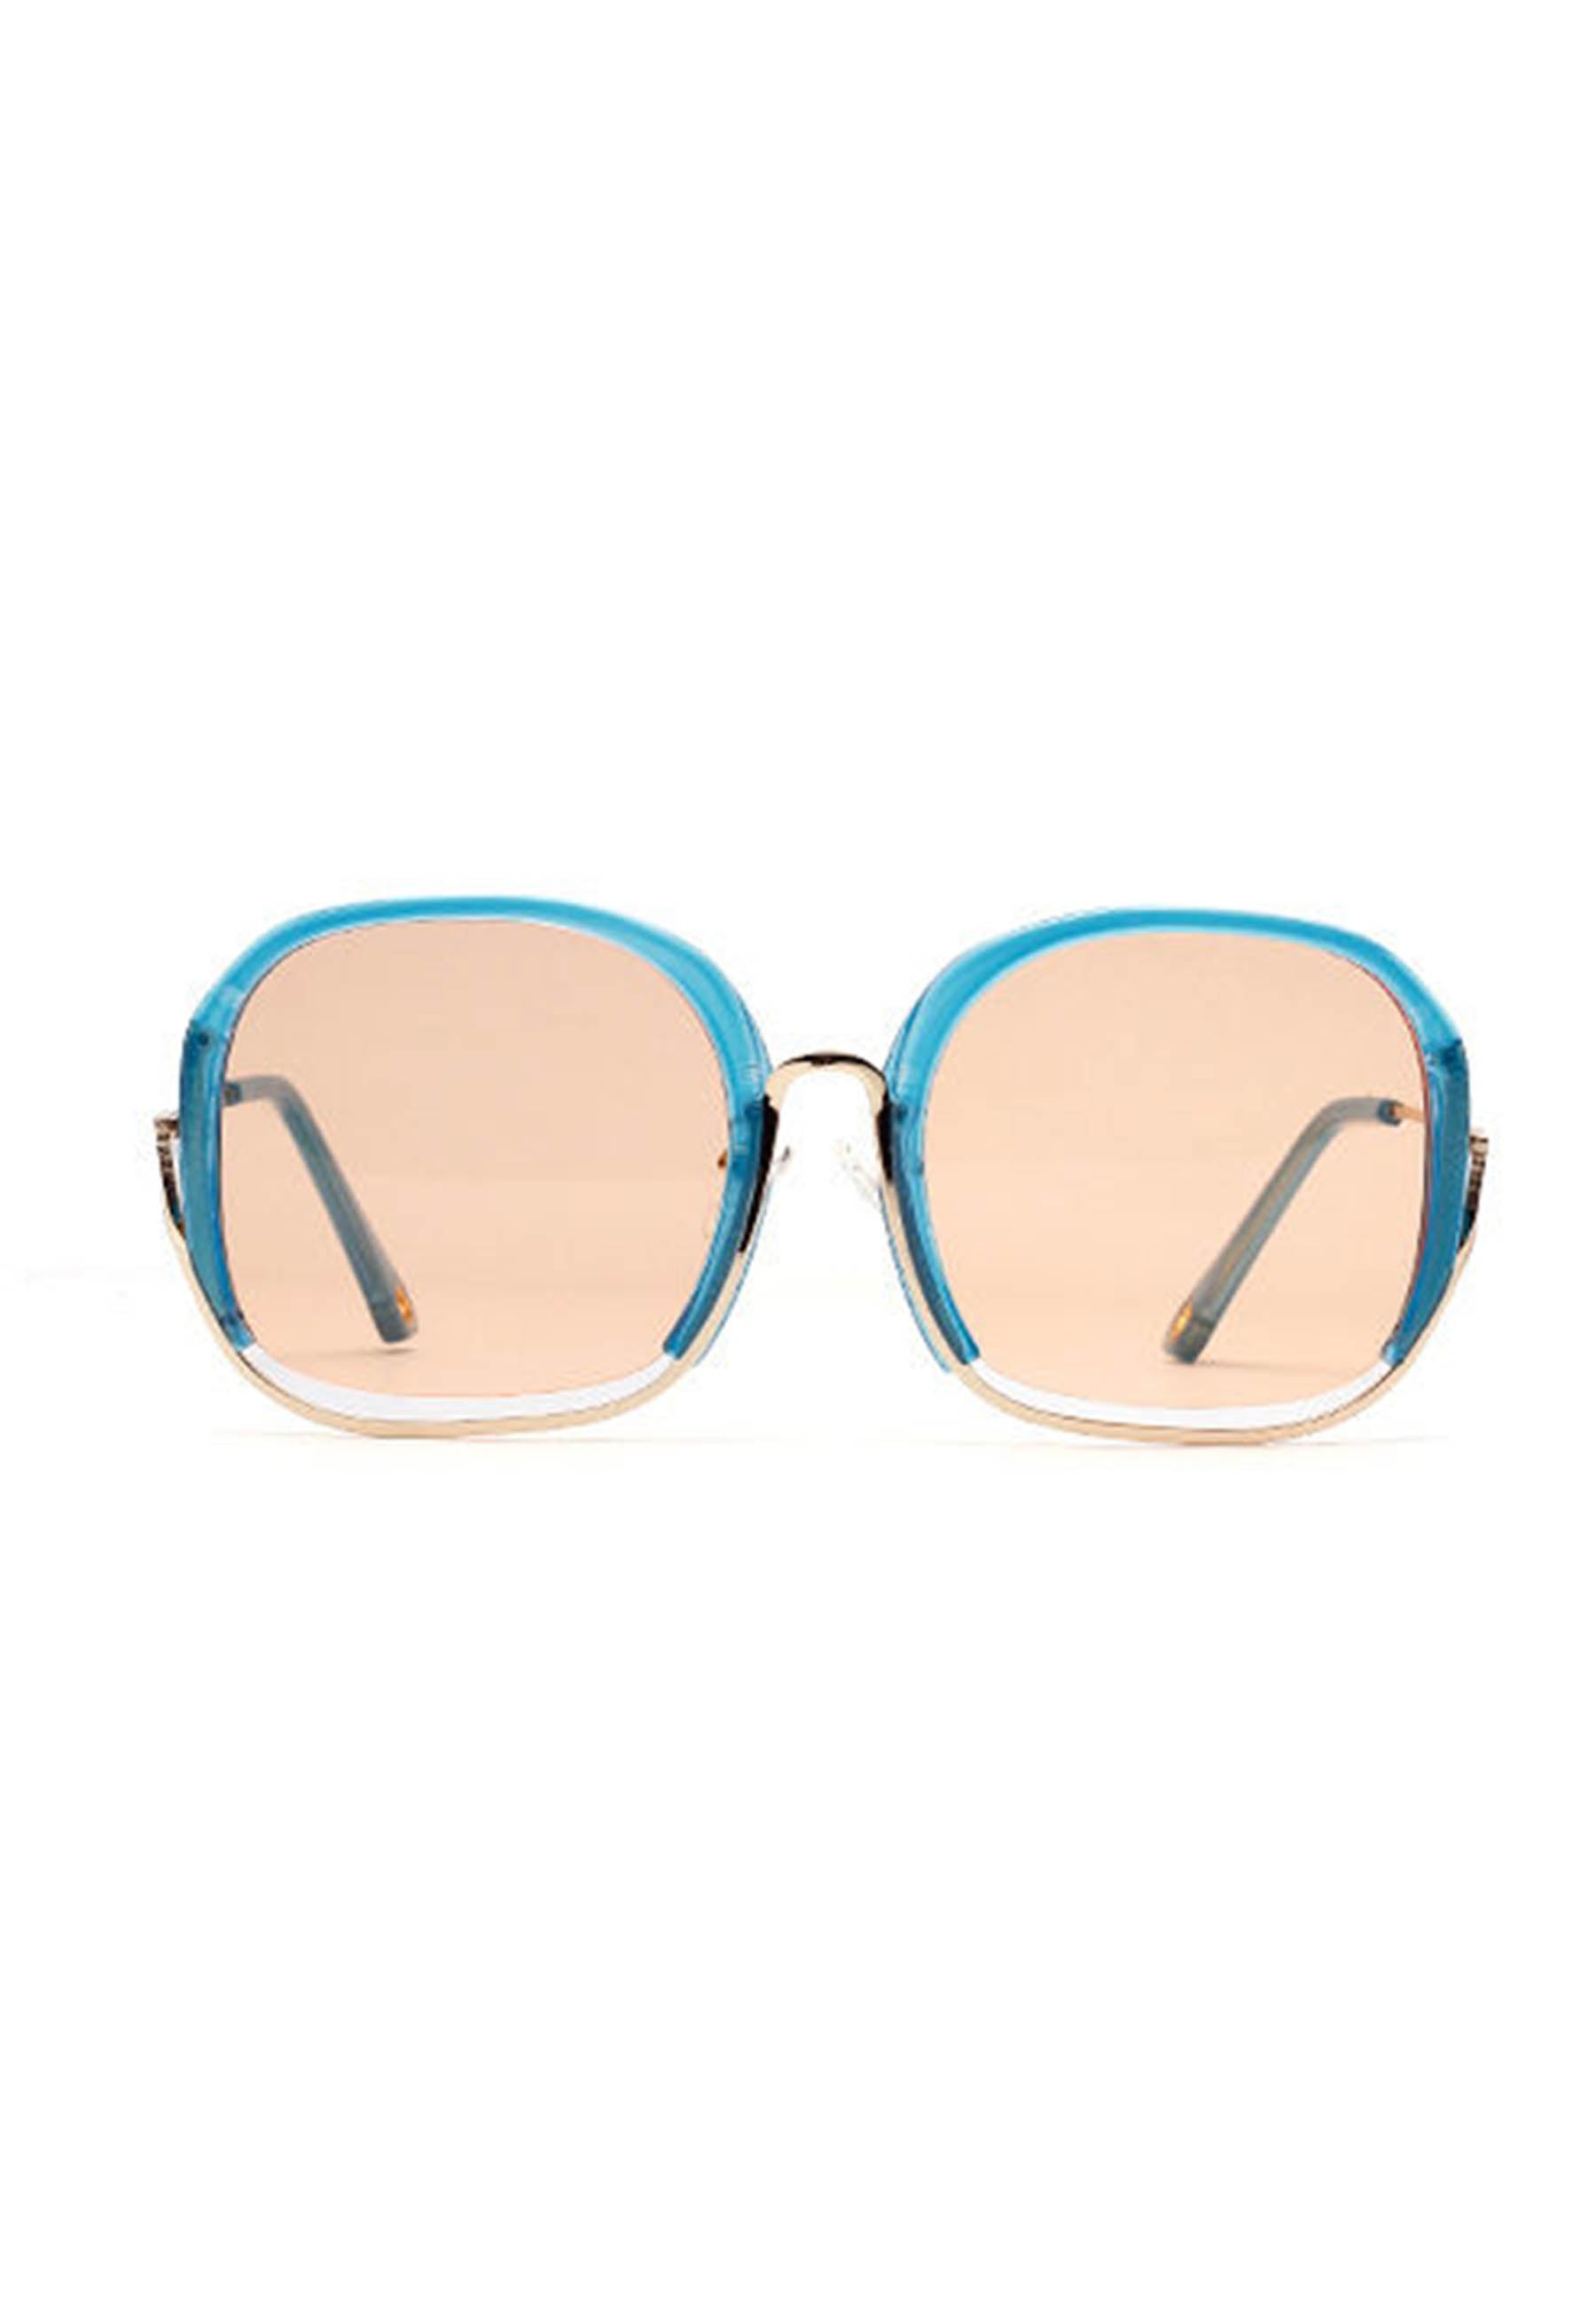 Modne okulary przeciwsłoneczne w kształcie kwadratu